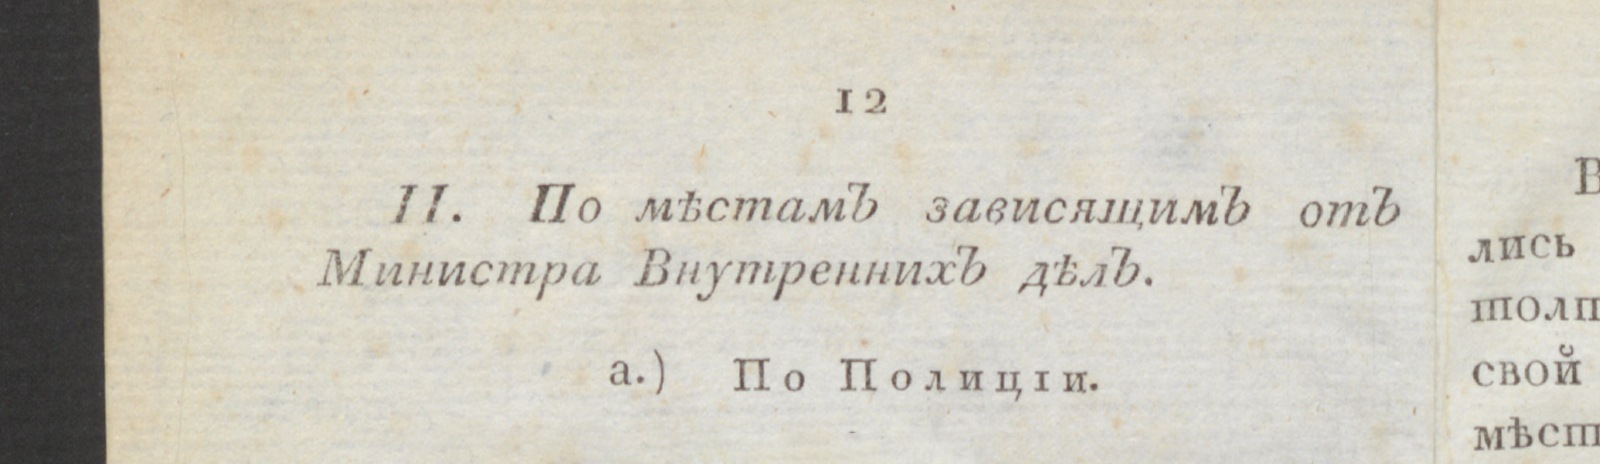 Изображение книжного памятника 'Санктпетербургский журнал. 1804, № 1 (янв.)'